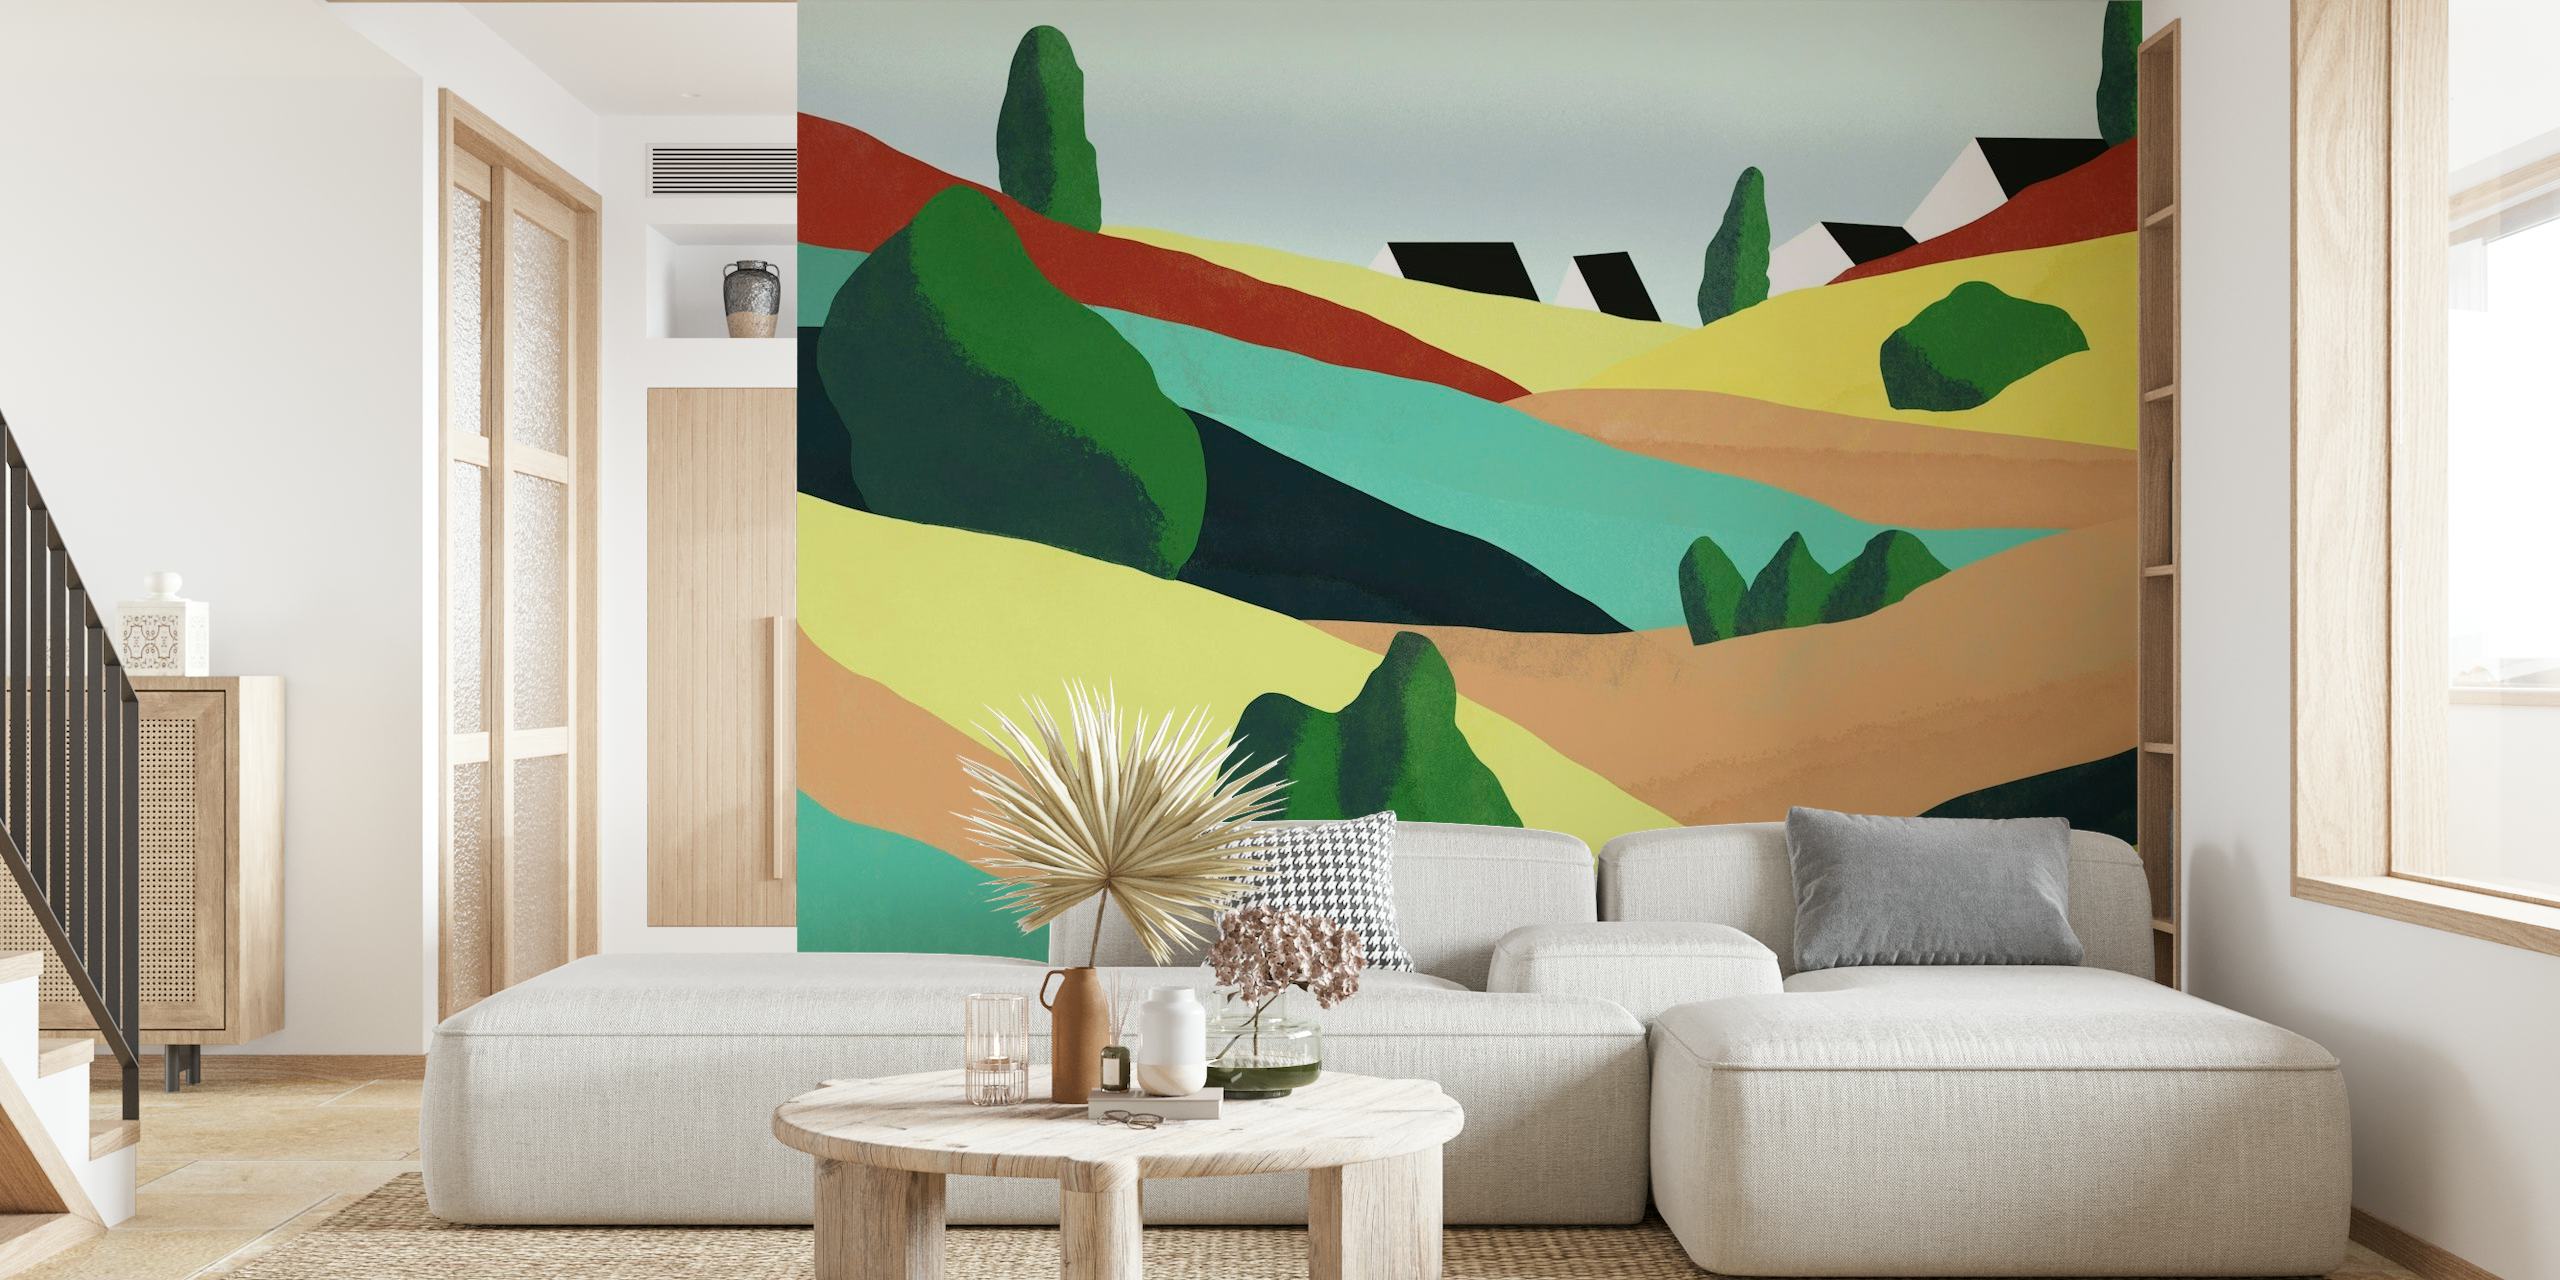 Abstrakcyjna fototapeta z falistymi wzgórzami z kolorowym krajobrazem przypominającym kreskówkę